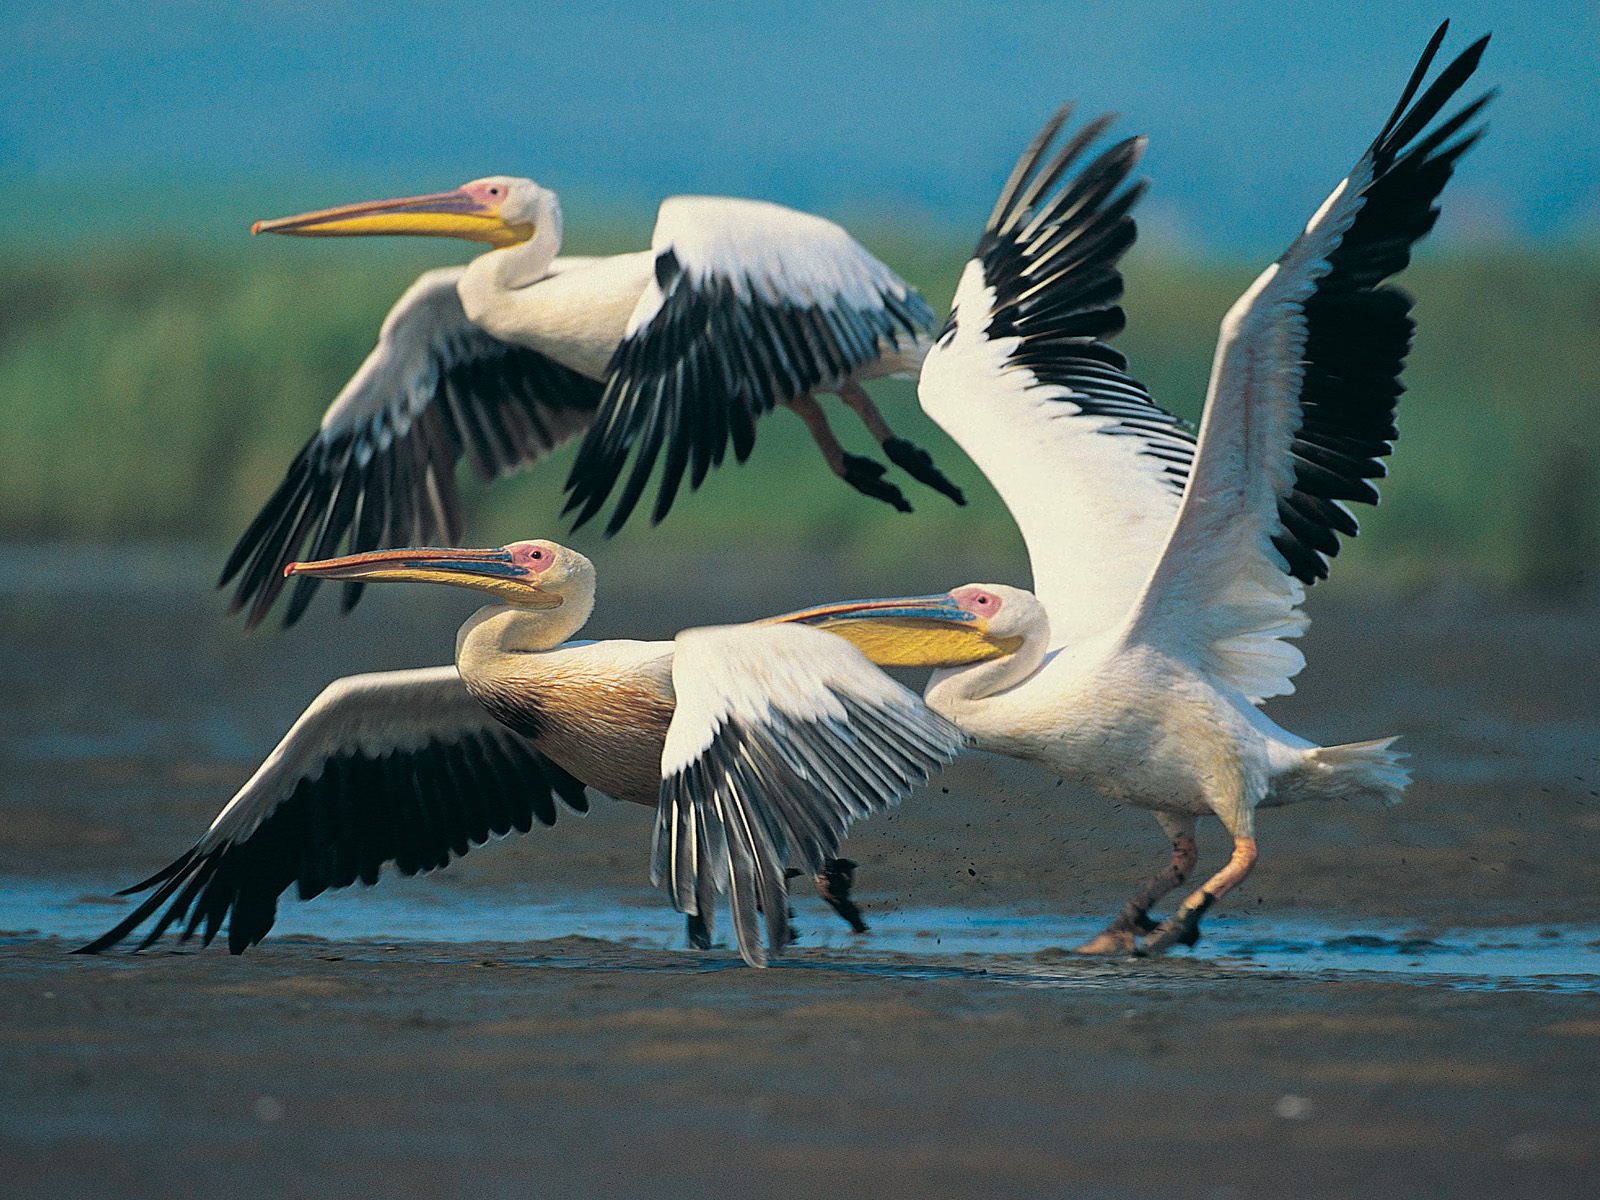 Wallpaper Pictures Amazing Wild Life Photography Birds Desktop